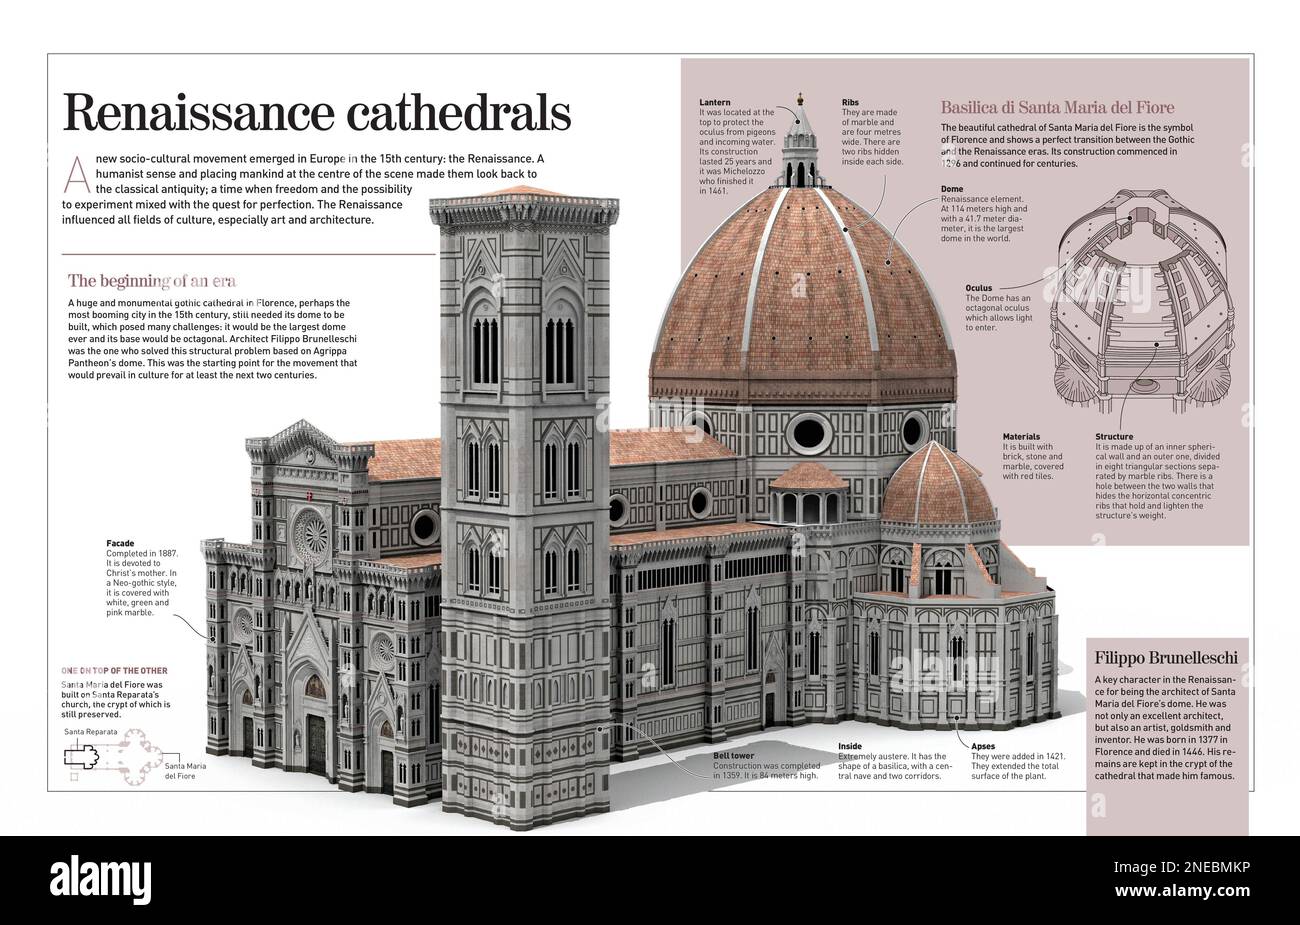 Infografica sulle cattedrali rinascimentali, in particolare la Cattedrale di Santa Mari del Fiore (Firenze, 15th ° secolo). [Adobe InDesign (.indd); 4960x3188]. Foto Stock